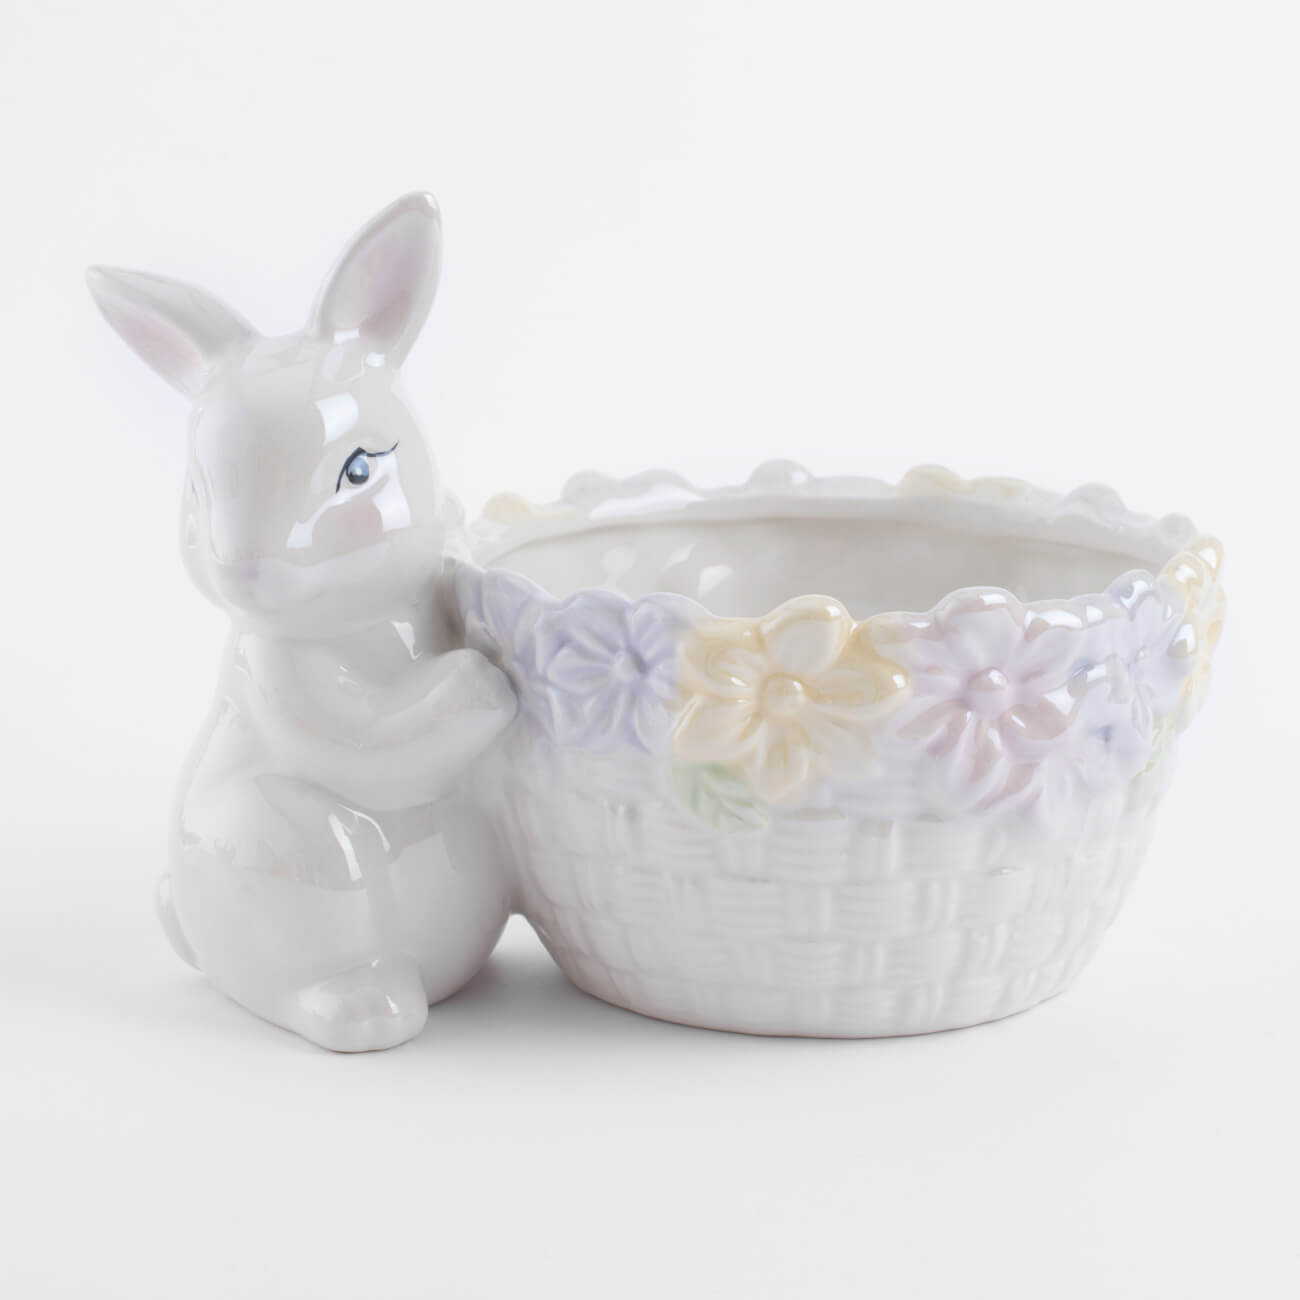 сувенир керамика кролик яйцо зелёный флок 15 8х8 5х8 5 см Конфетница, 18x13 см, керамика, перламутр, Кролик с корзиной в цветах, Easter